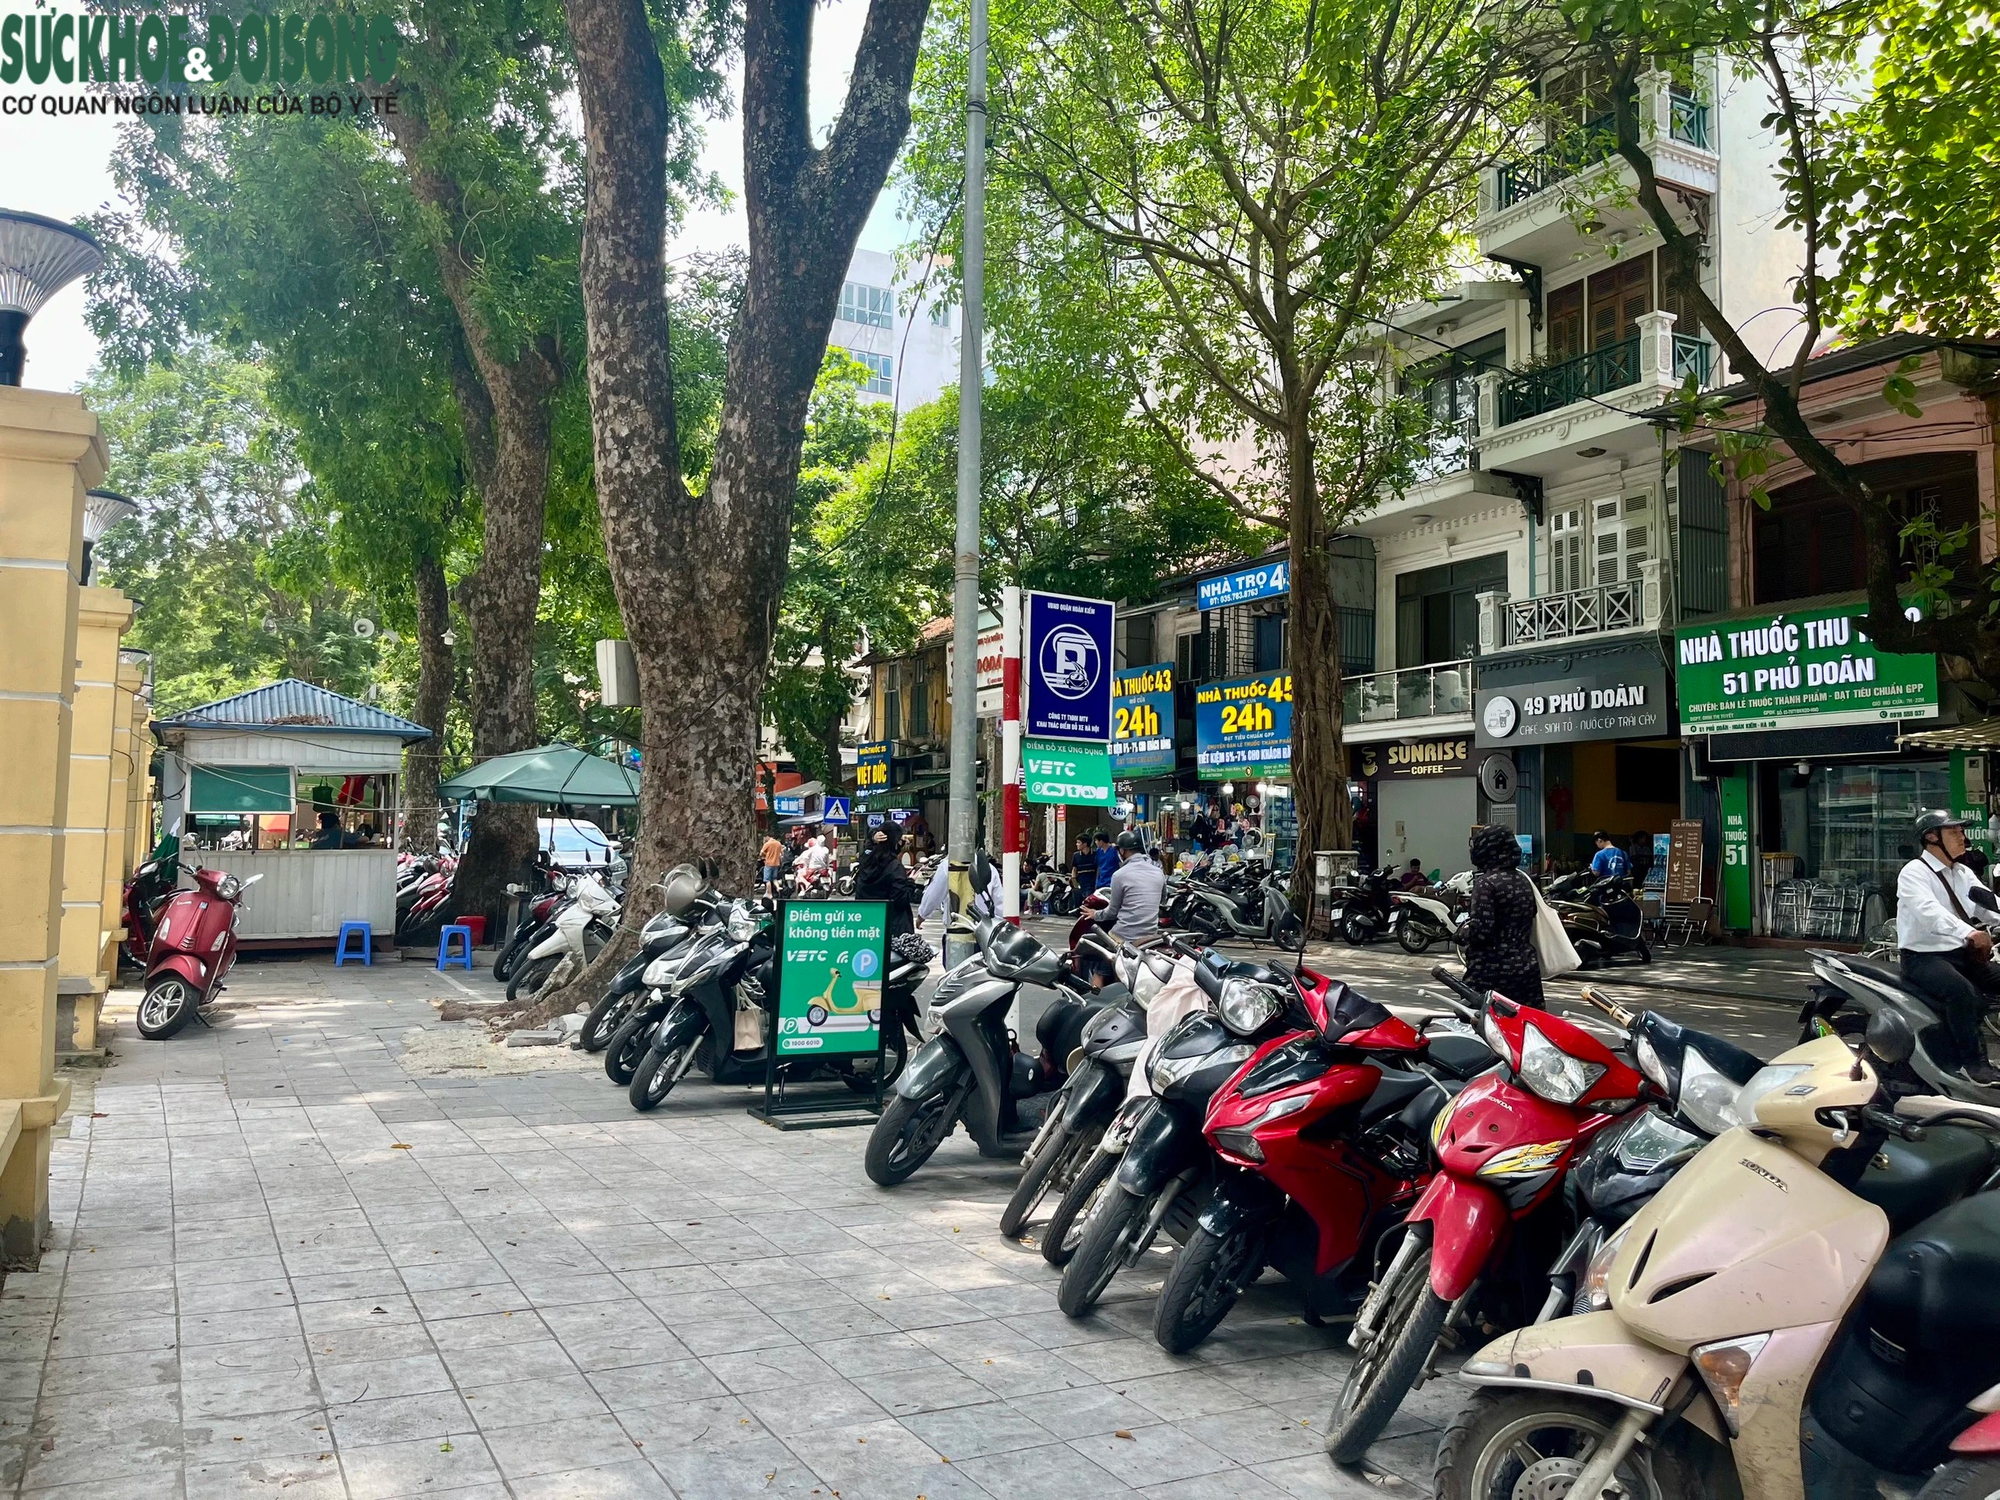 Dịch vụ trông xe không dùng tiền mặt tại Hà Nội: Tránh 'chặt chém'- Ảnh 3.